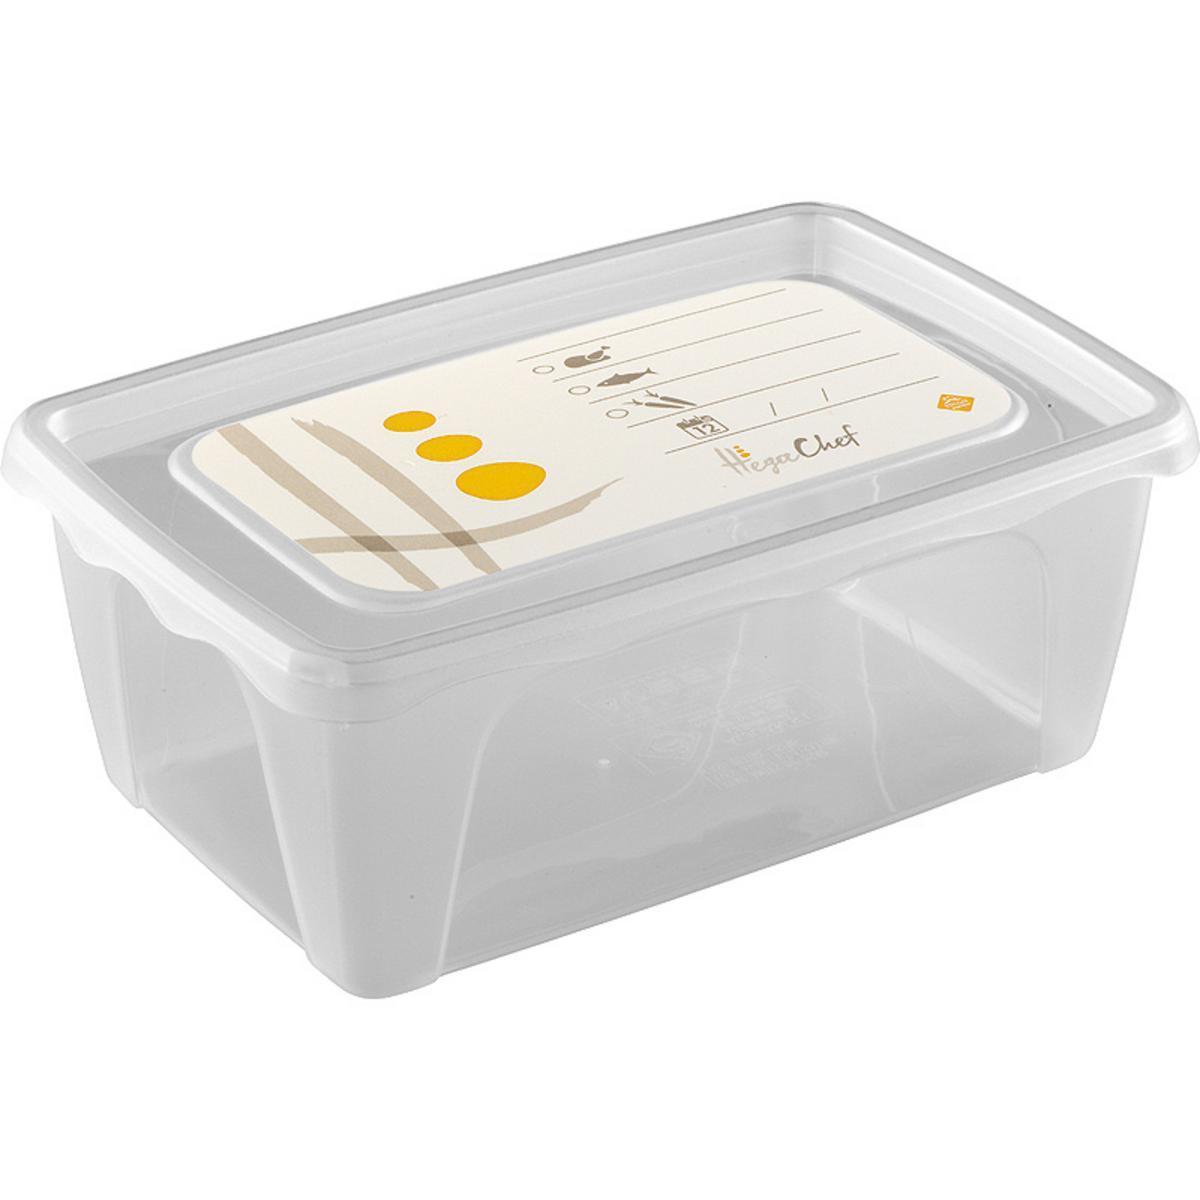 Boîte alimentaire Chef - Plastique - 18 x 12 x H 7 cm - Vert, rouge ou jaune